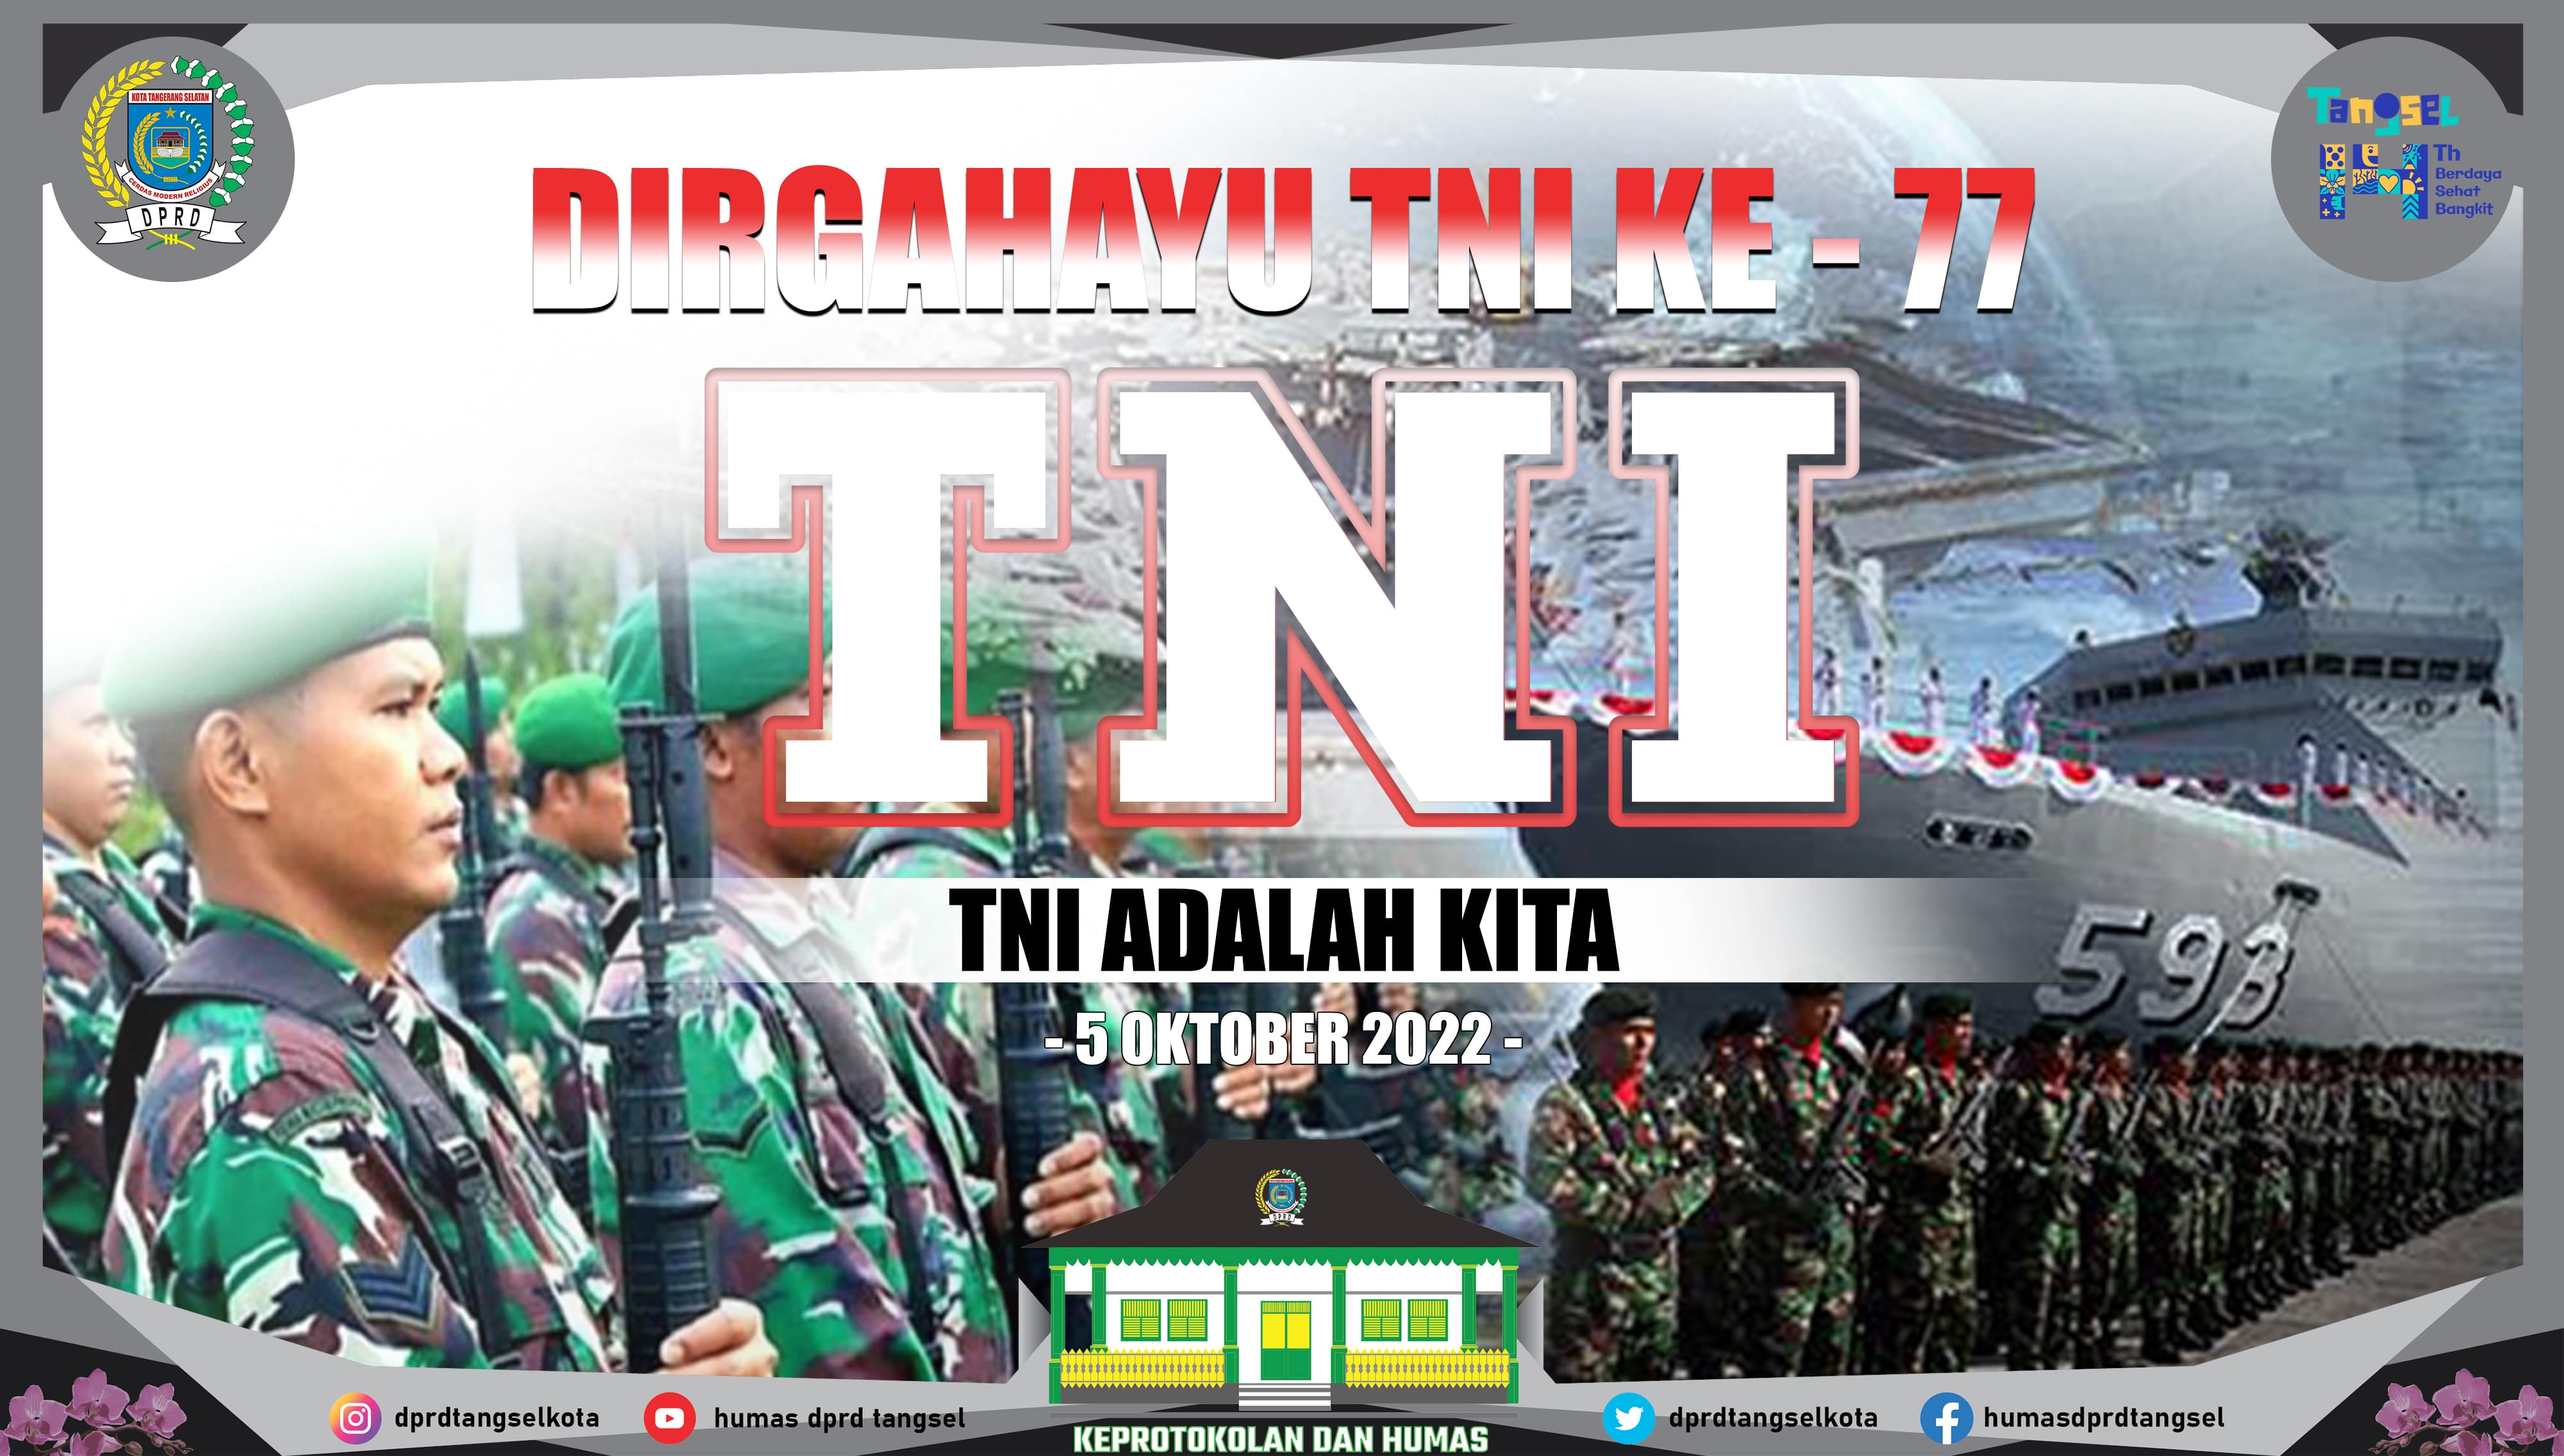 Dirgahayu ke-77 Tentara Republik Indonesia